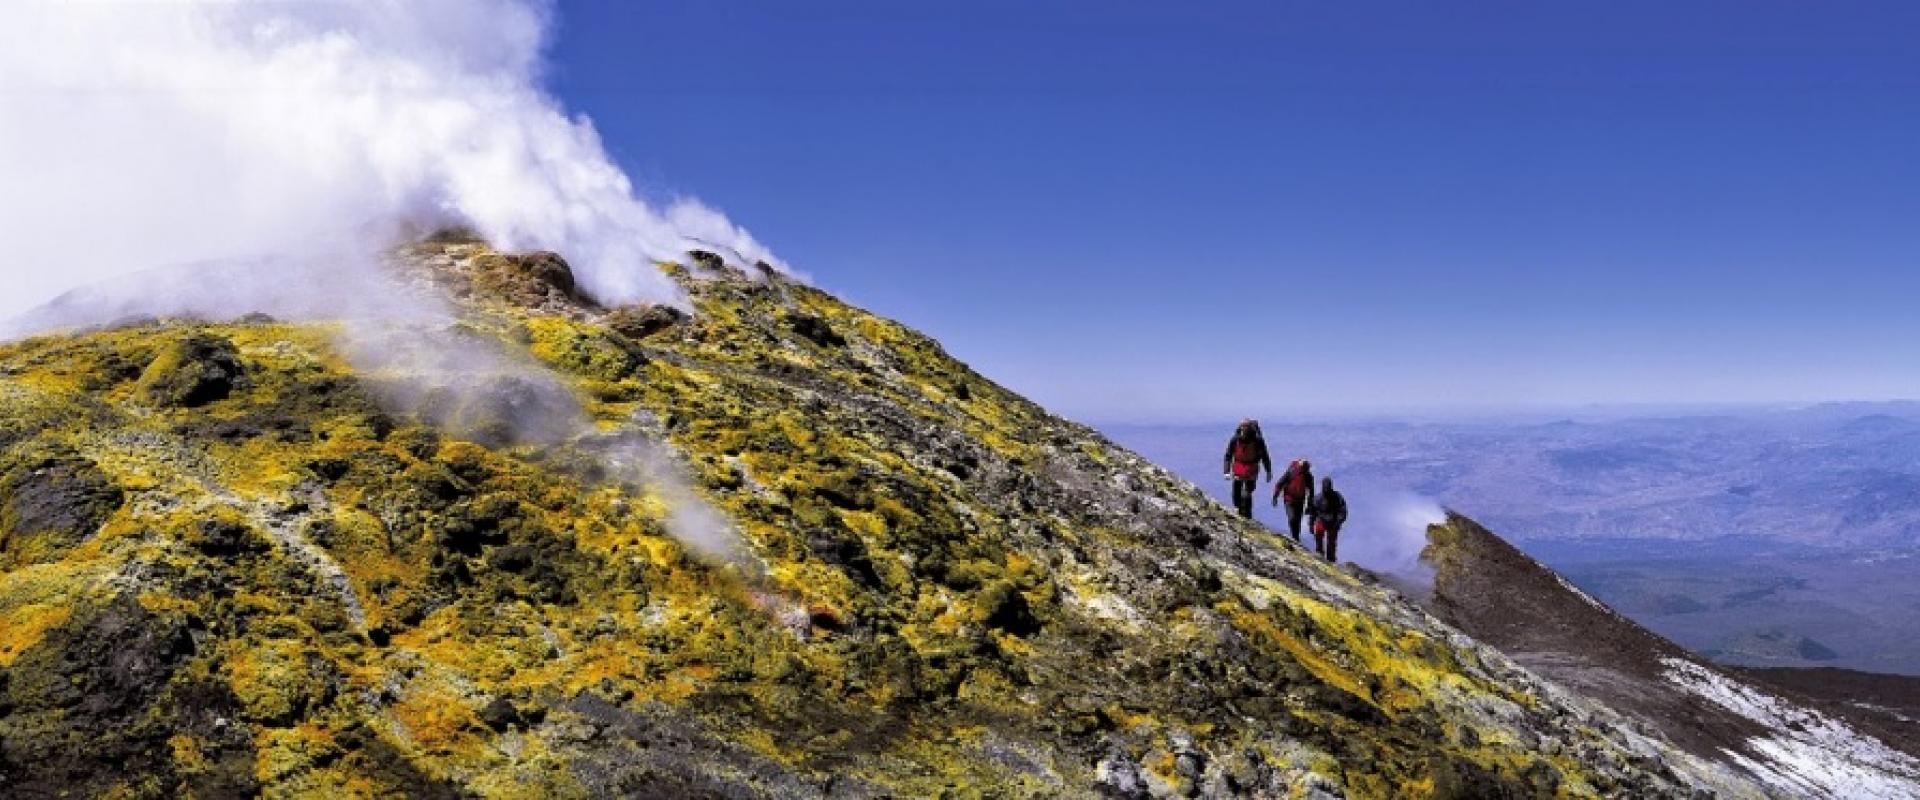 Escursion on Mount Etna